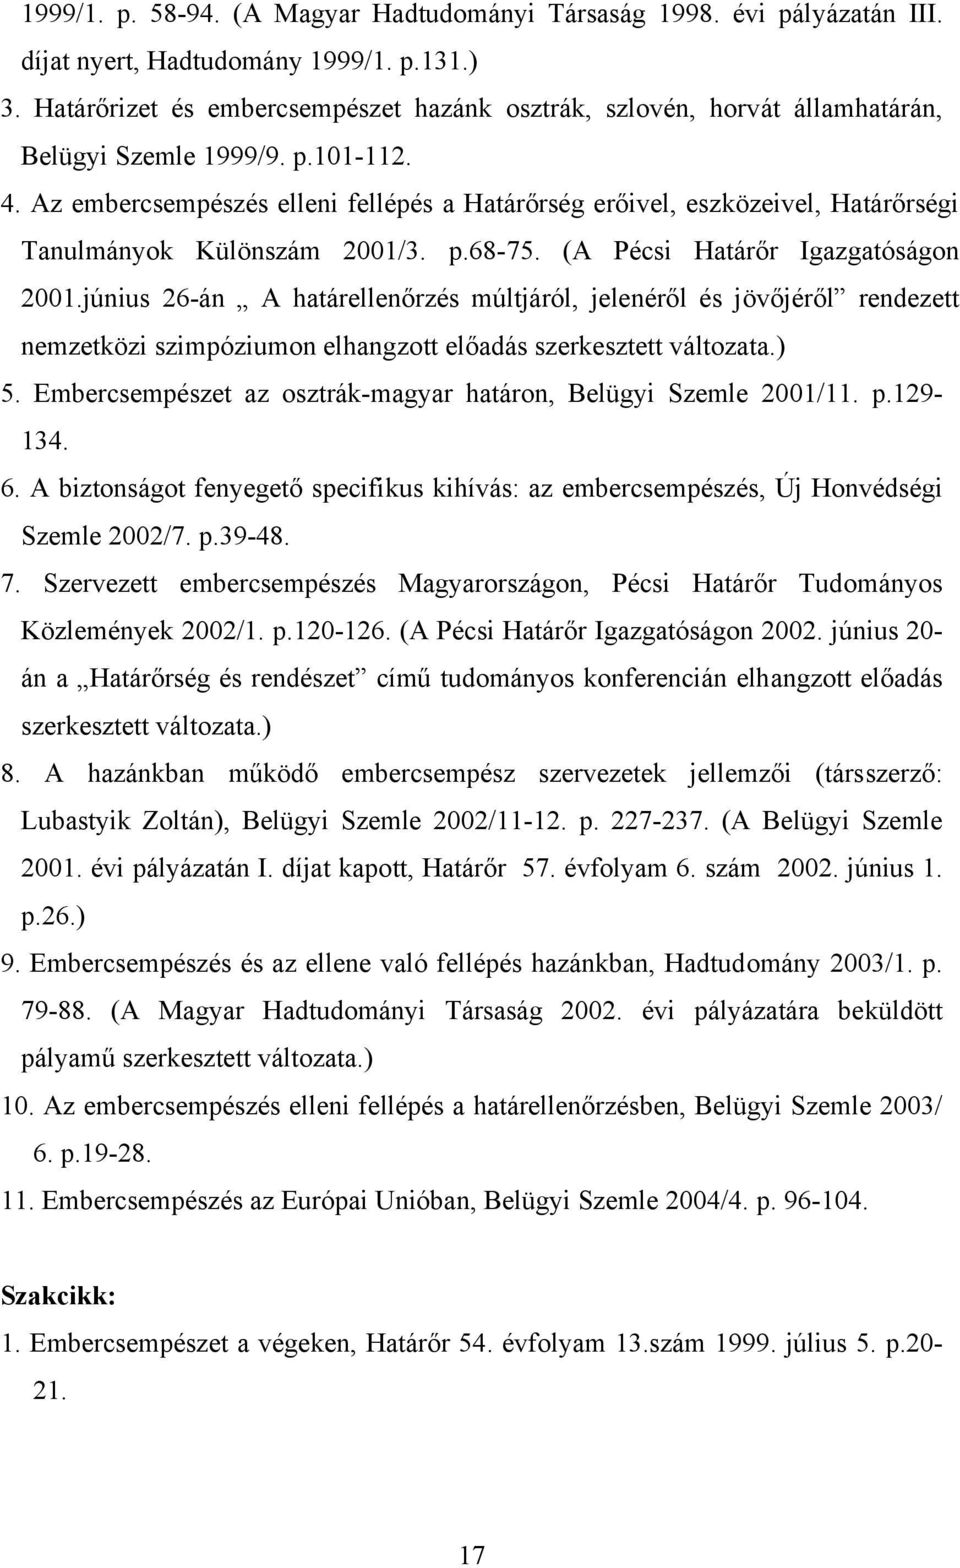 Az embercsempészés elleni fellépés a Határőrség erőivel, eszközeivel, Határőrségi Tanulmányok Különszám 2001/3. p.68-75. (A Pécsi Határőr Igazgatóságon 2001.